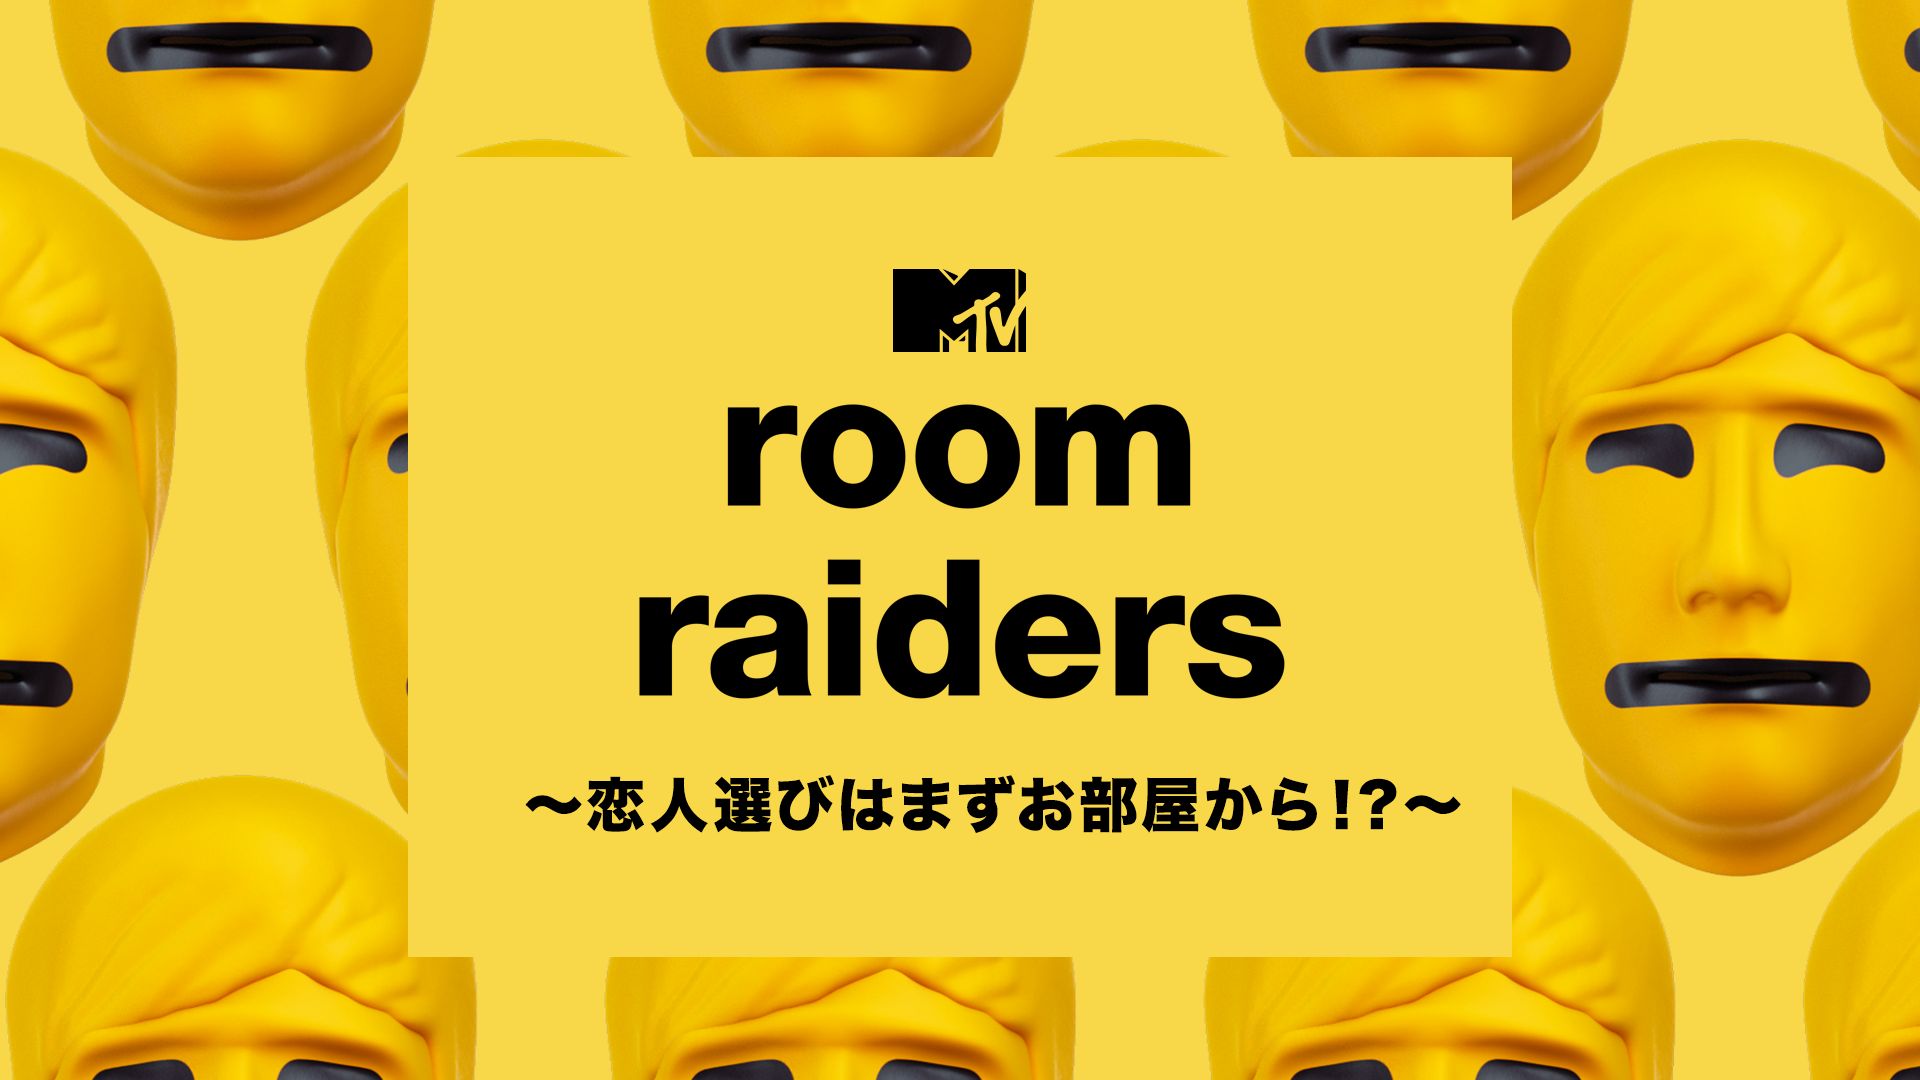 Room Raiders 〜恋人選びはまずお部屋から!?〜